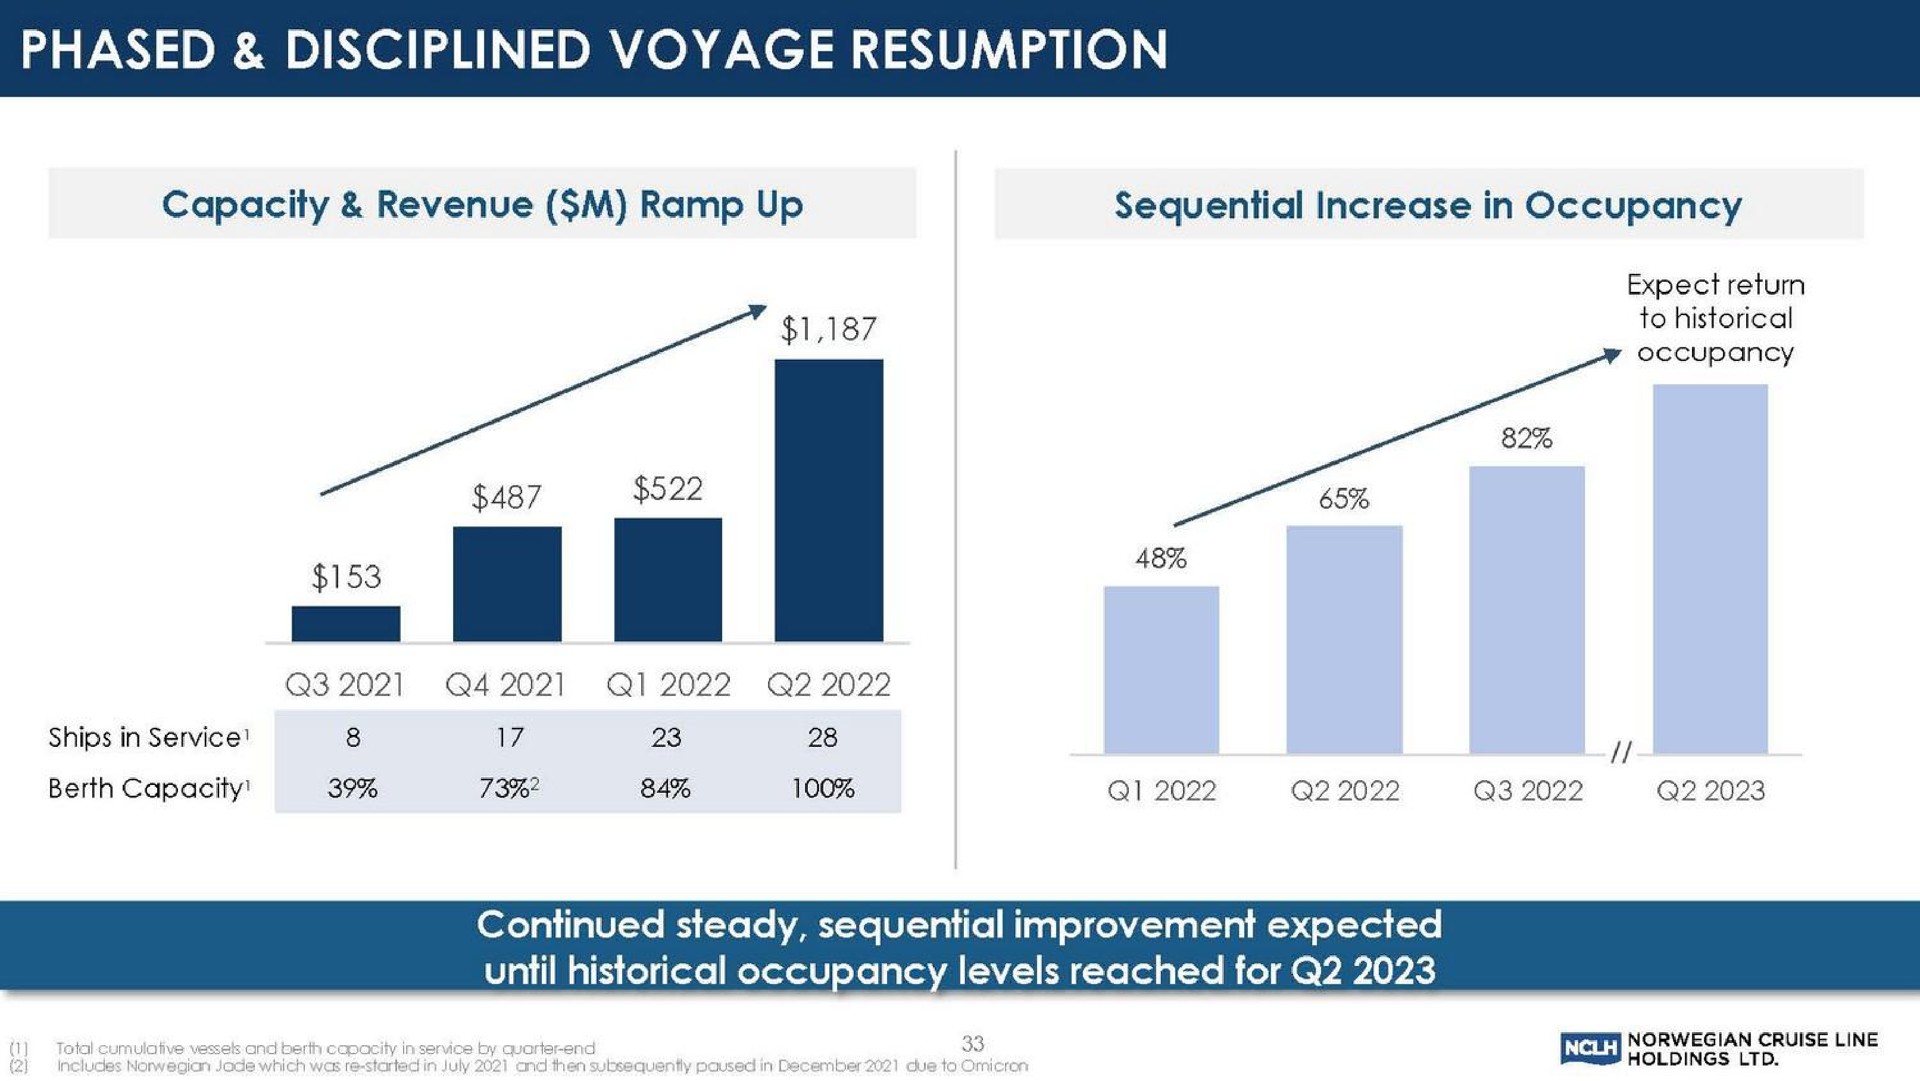 phased disciplined voyage resumption | Norwegian Cruise Line